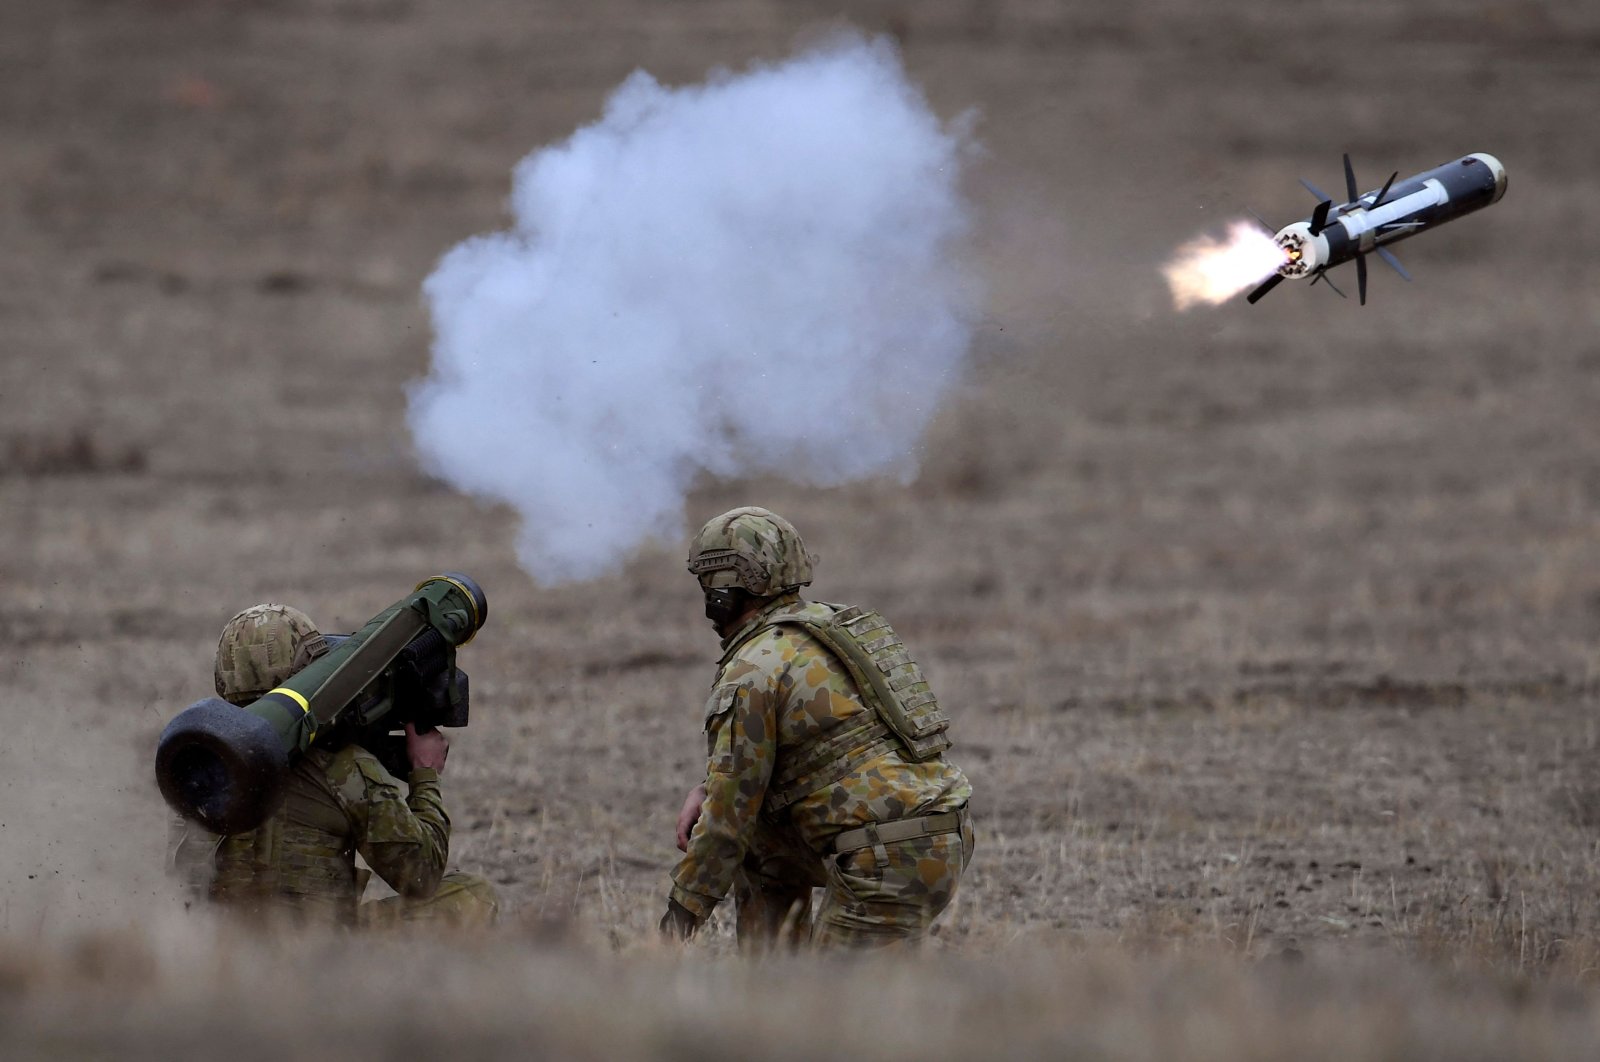 Australia merencanakan perombakan pertahanan terbesar sejak Perang Dunia II untuk melawan China